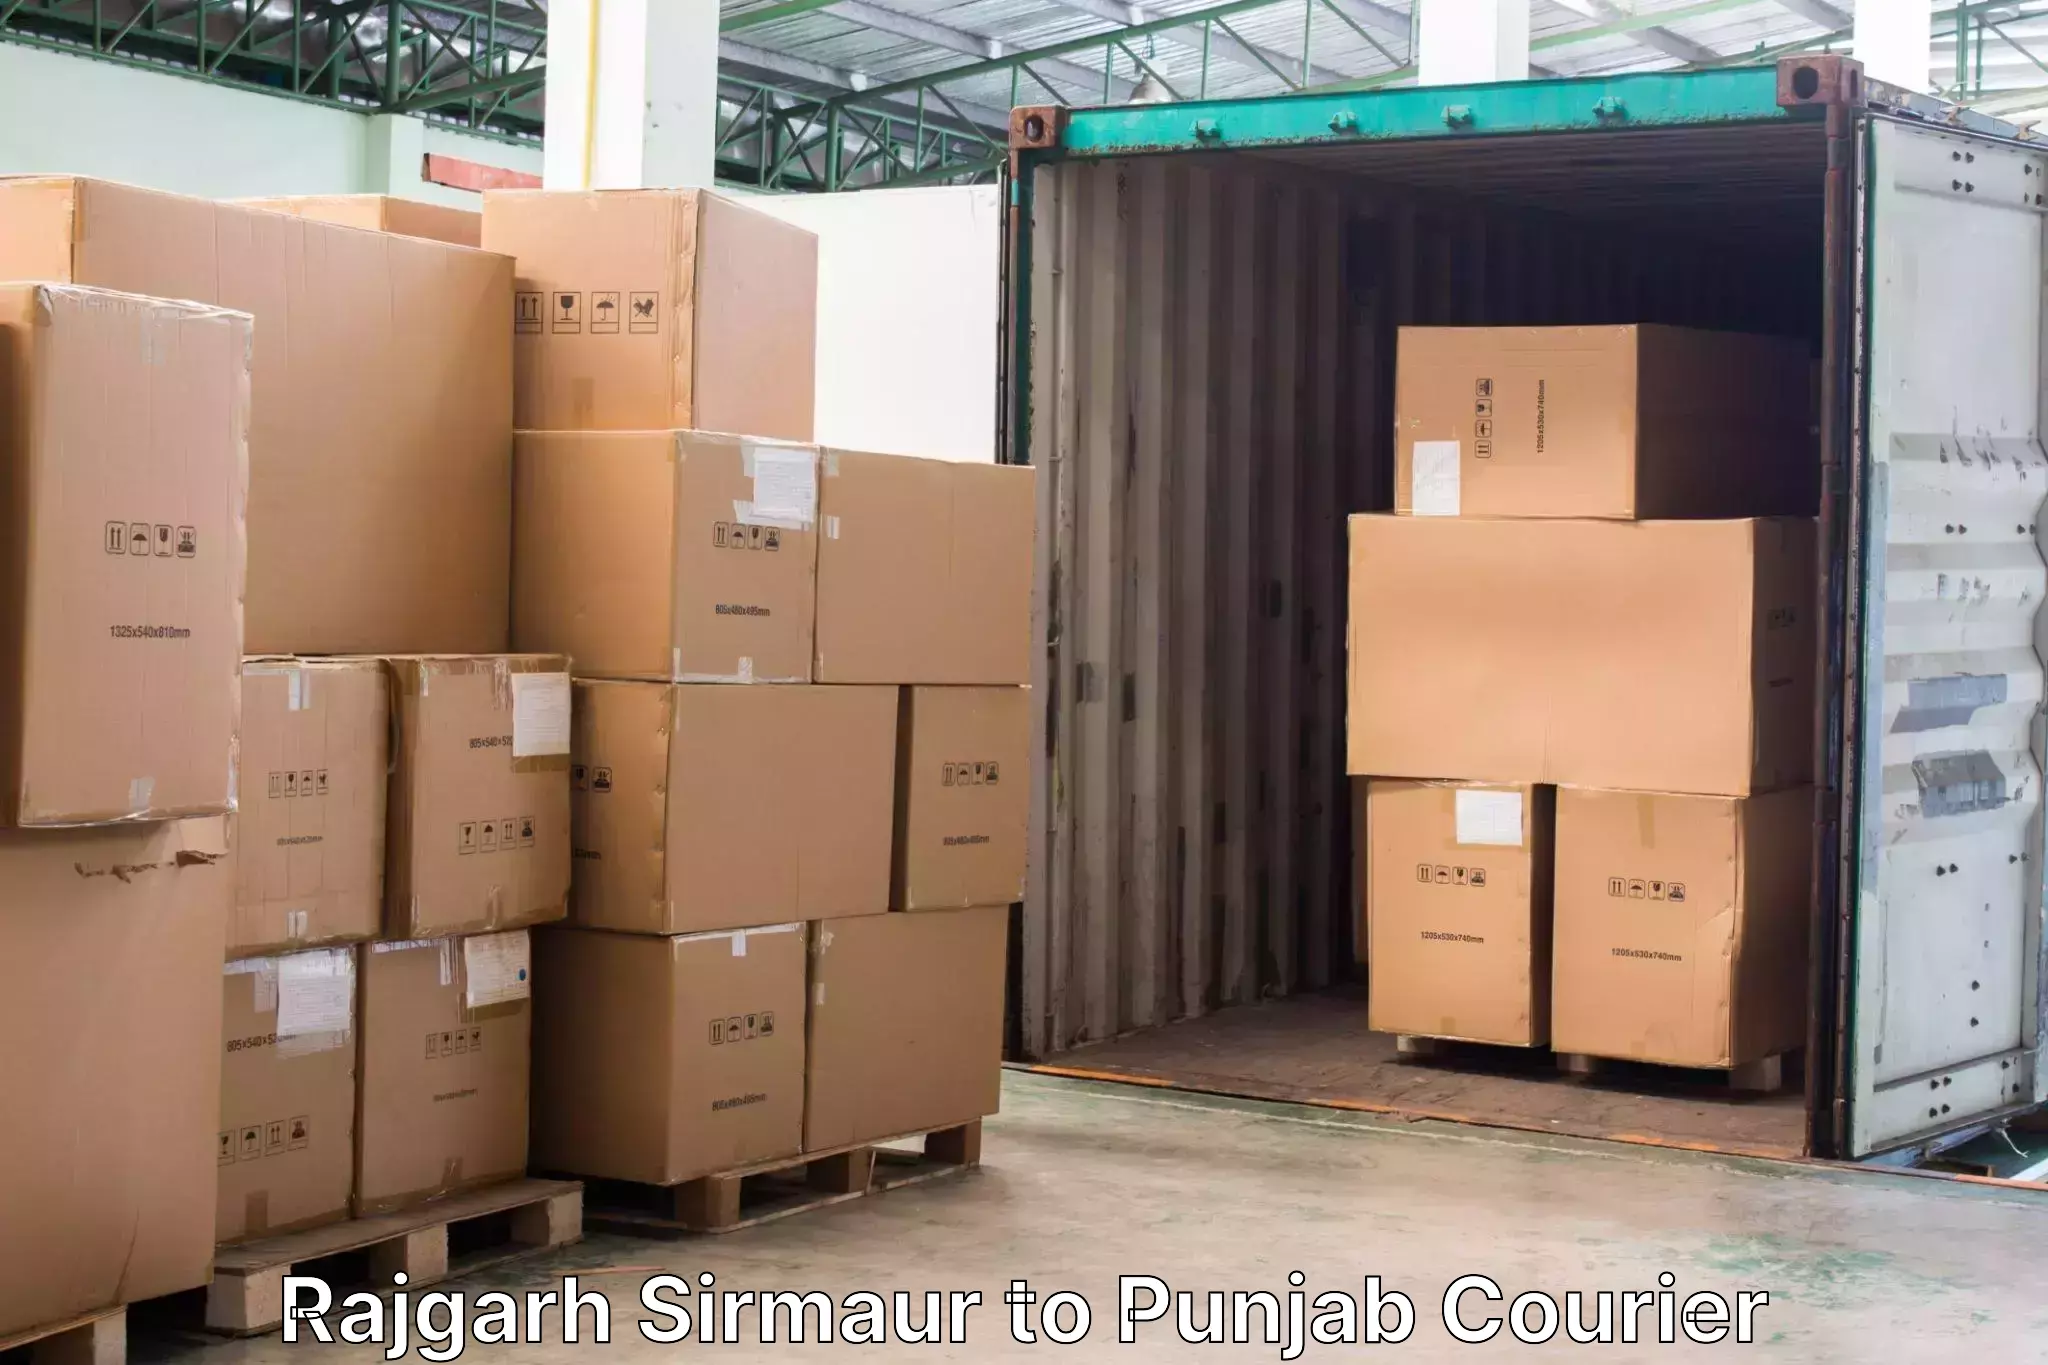 Baggage transport management in Rajgarh Sirmaur to Punjab